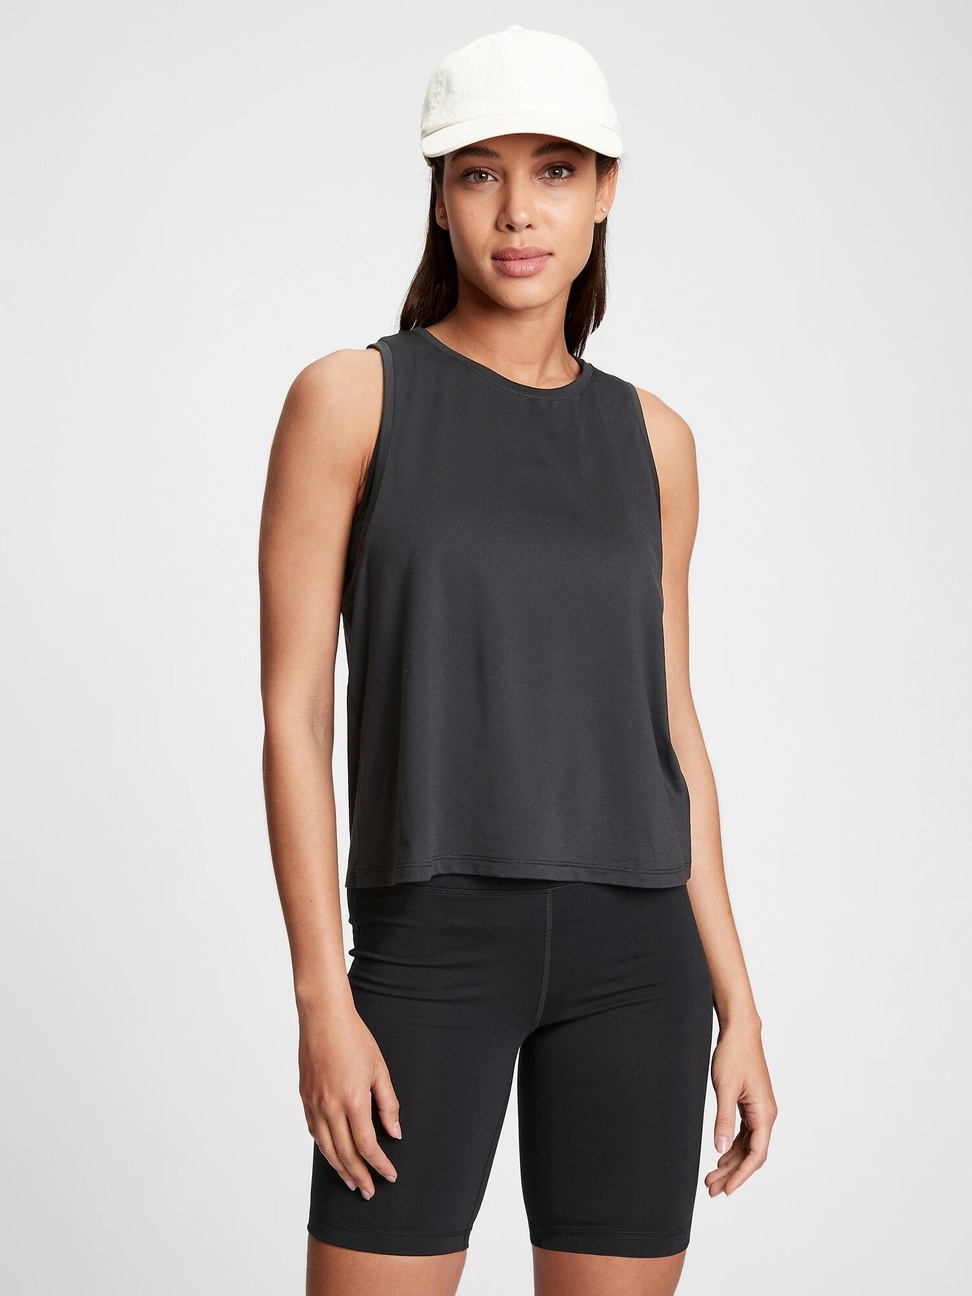 女裝|素色透氣無袖運動T恤 Gap Fit運動系列-黑色